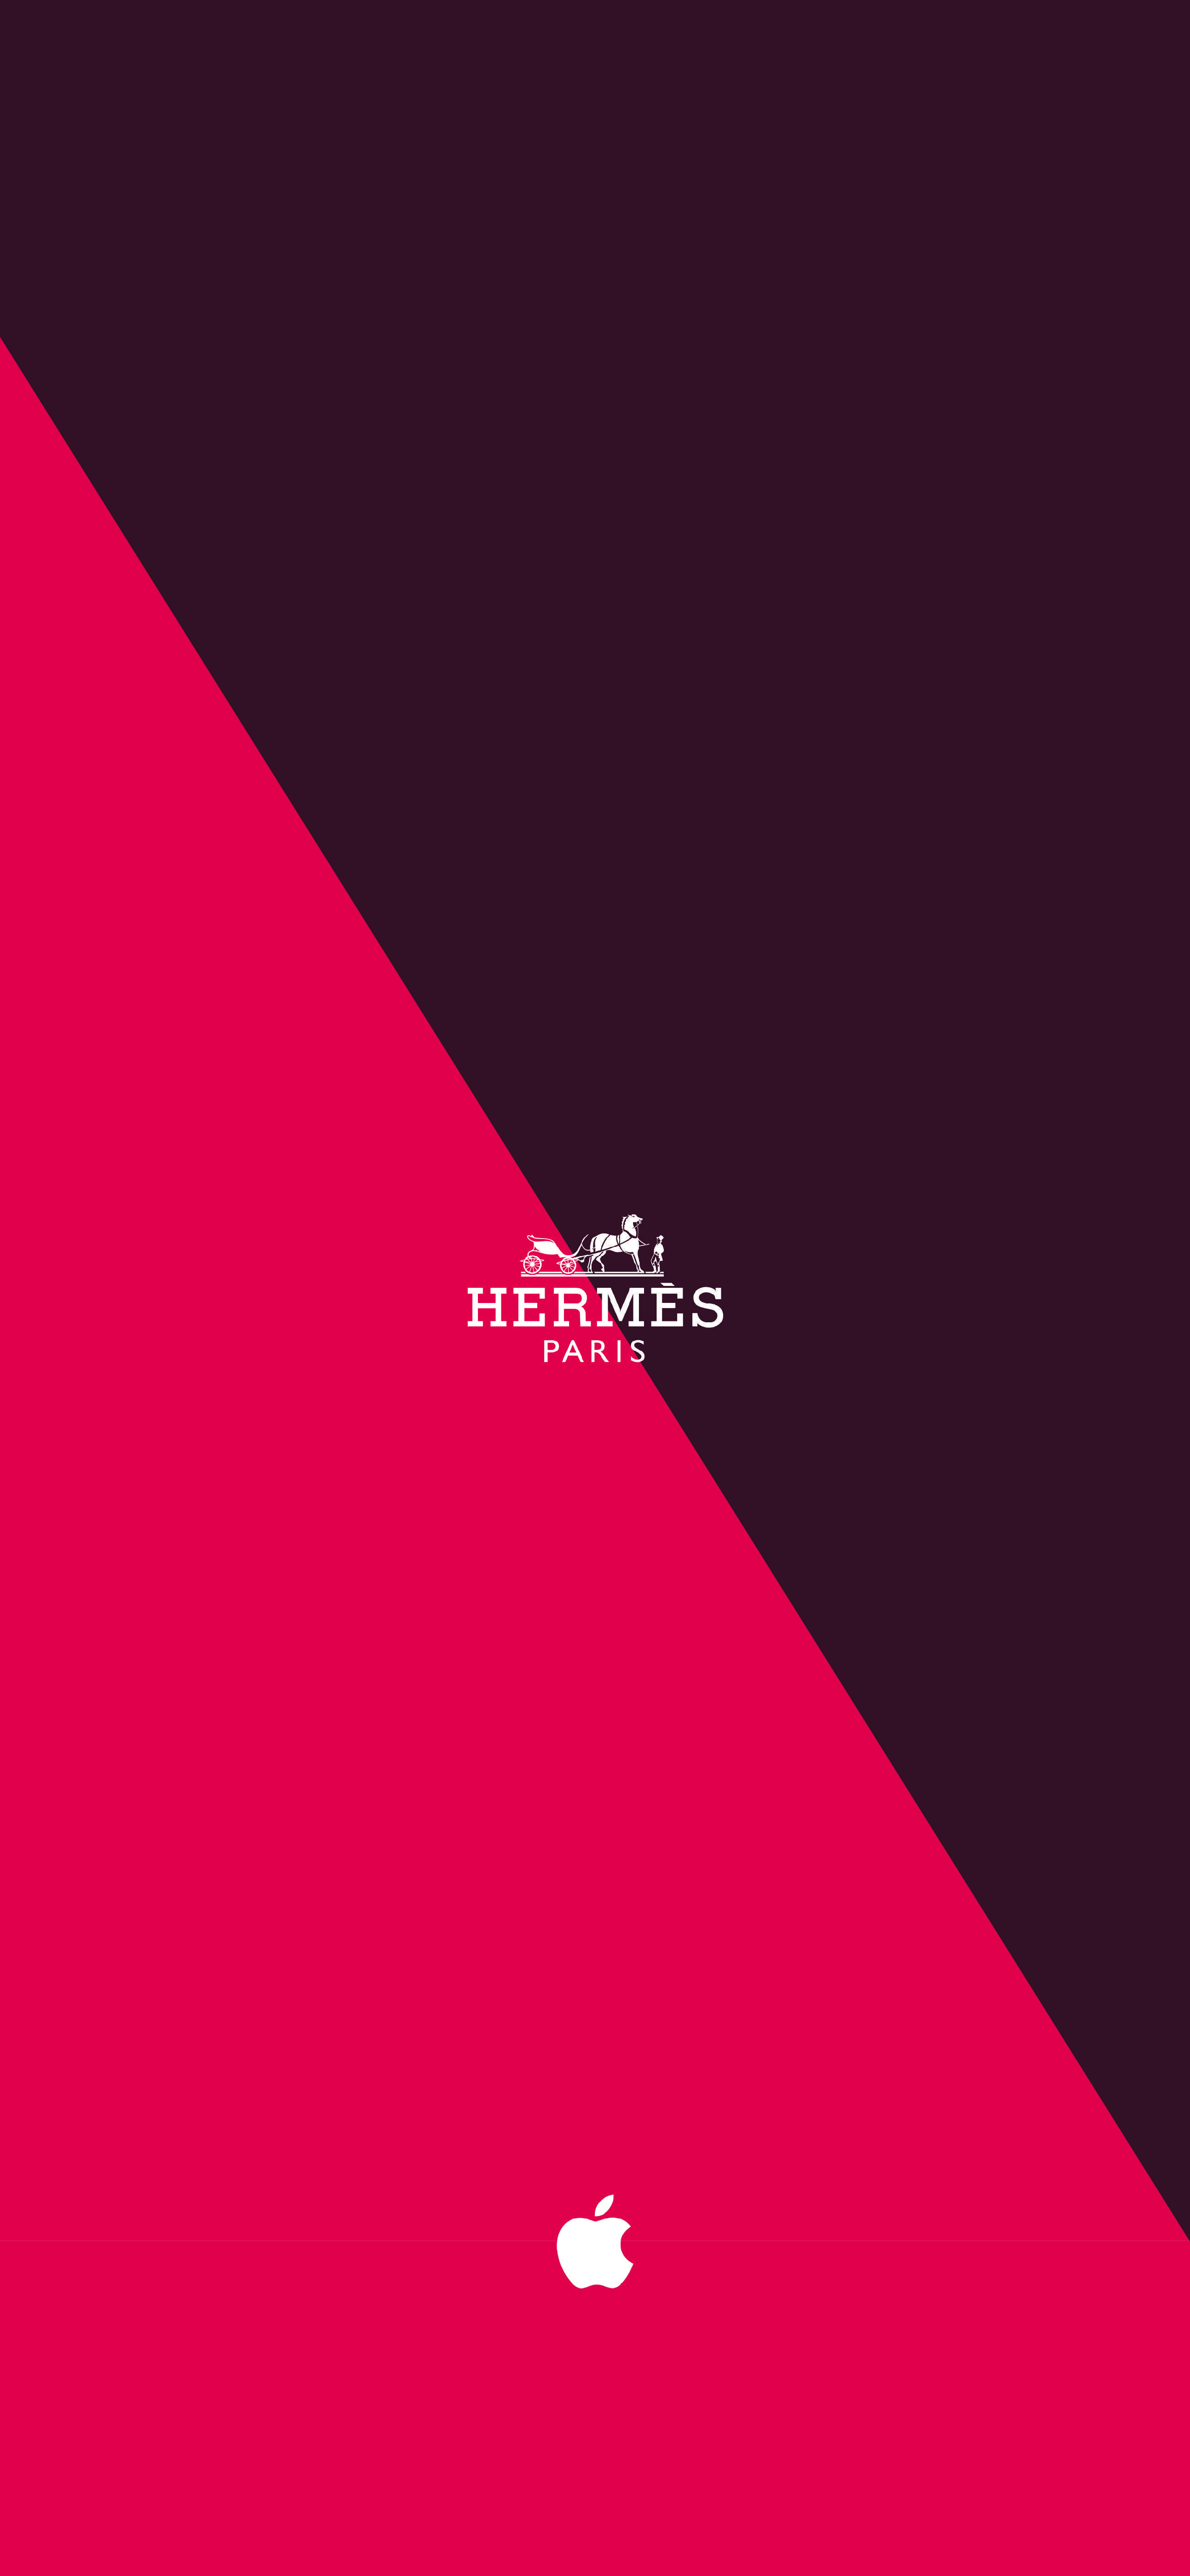 Hermes Wallpaper – Designer Wallcoverings and Fabrics